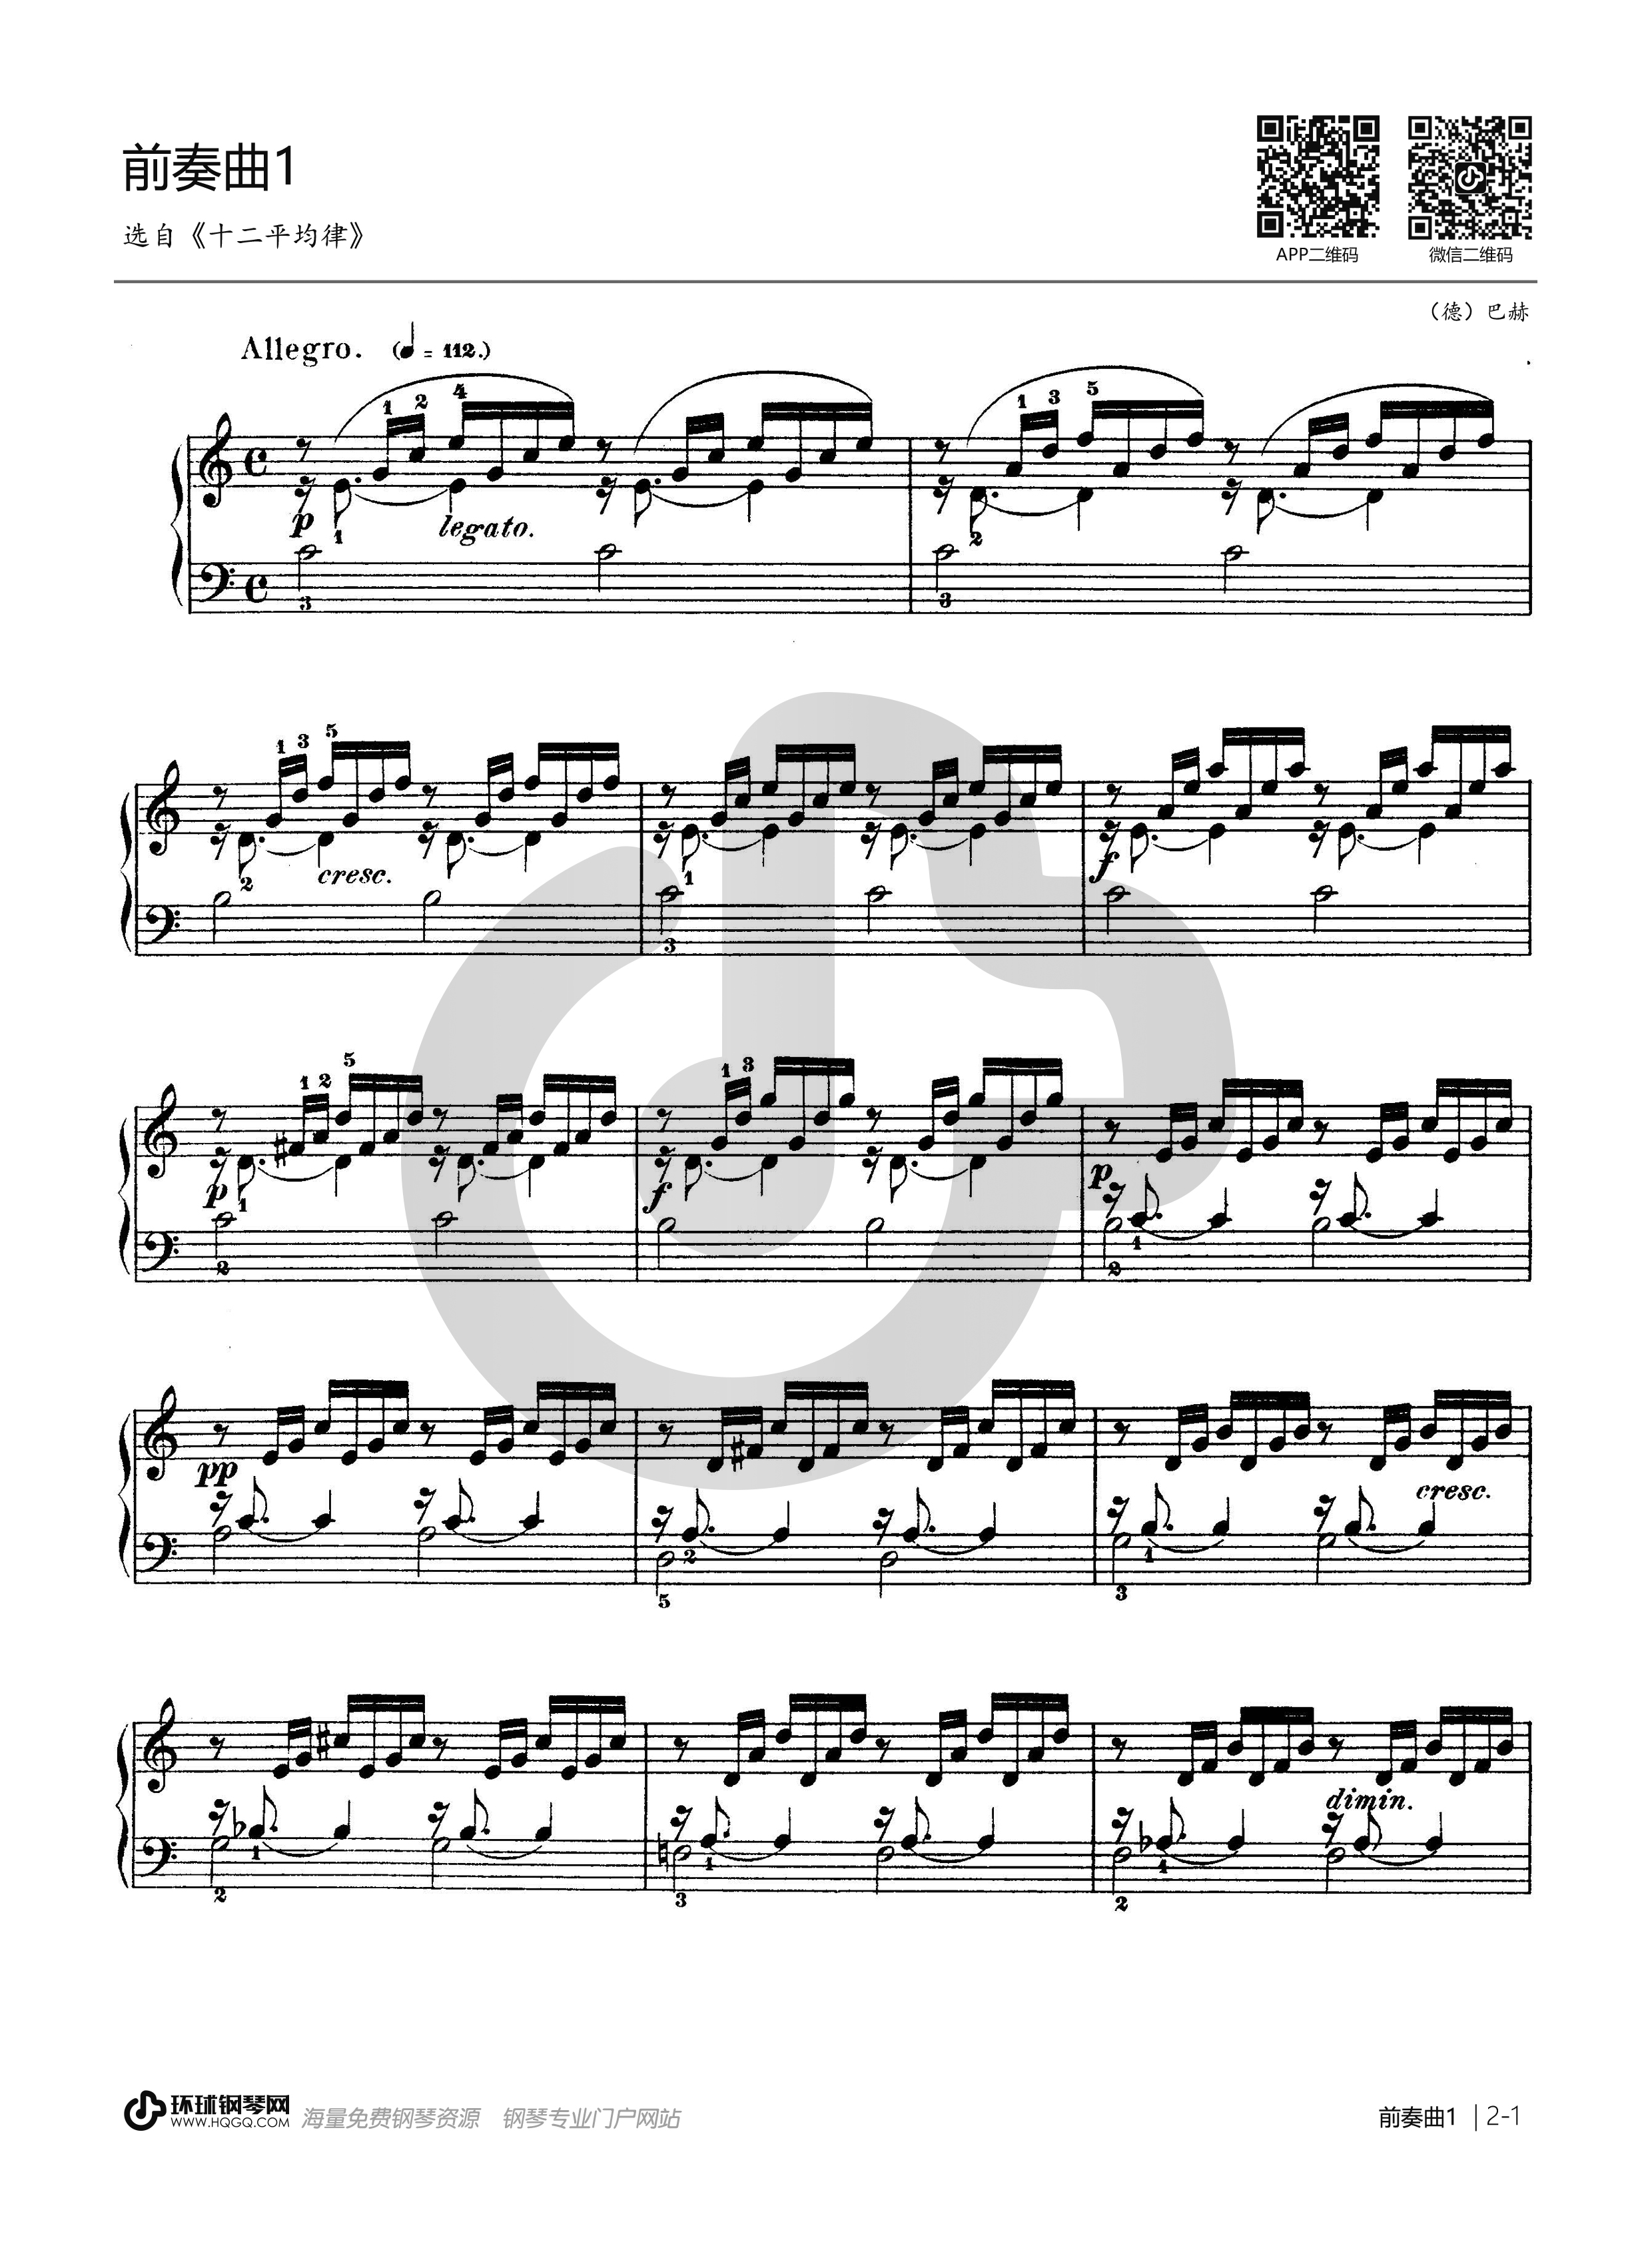 《巴赫《十二平均律》上册No.2赋格 BWV847,钢琴谱》巴赫|弹琴吧|钢琴谱|吉他谱|钢琴曲|乐谱|五线谱|简谱|高清免费下载|蛐蛐钢琴网